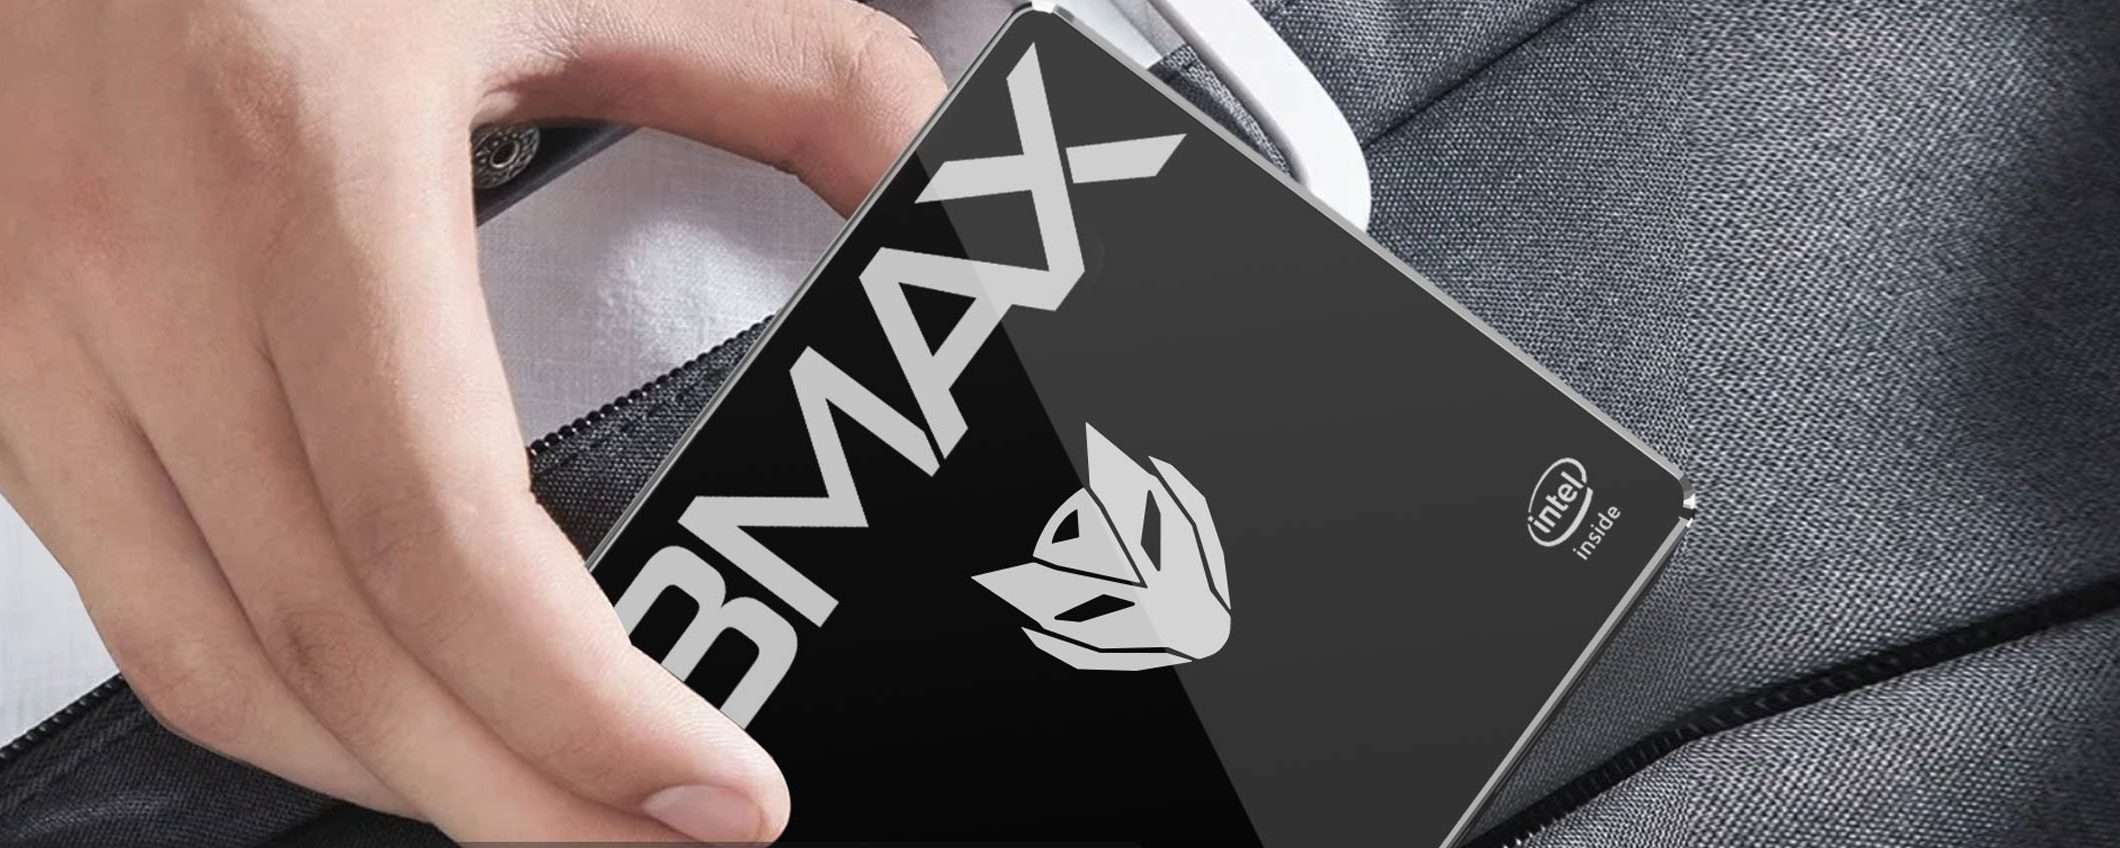 BMAX B2 S: il Mini PC a prezzo stracciato (coupon)